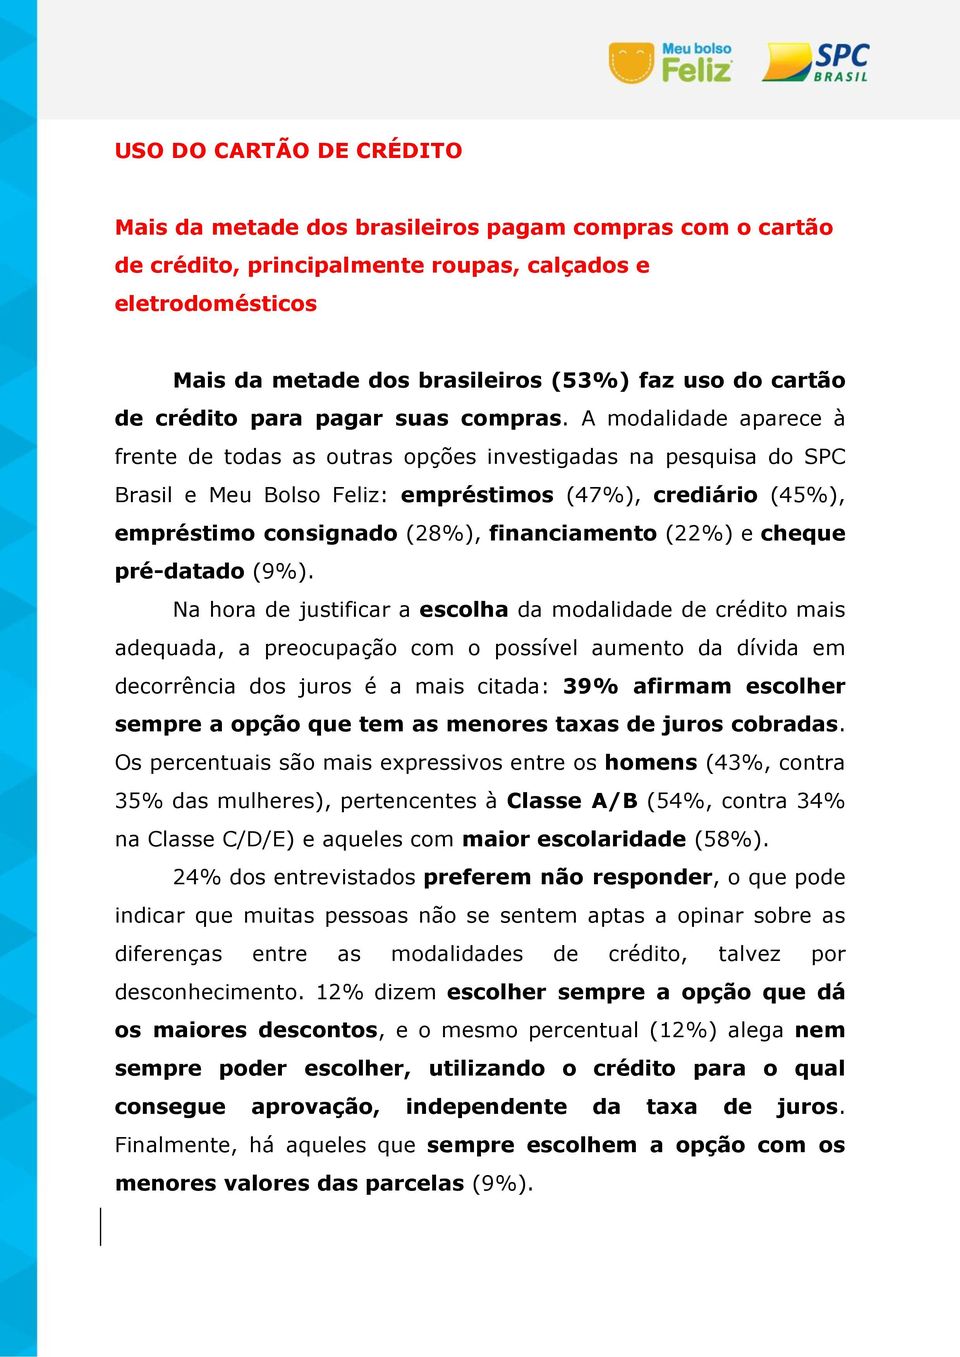 A modalidade aparece à frente de todas as outras opções investigadas na pesquisa do SPC Brasil e Meu Bolso Feliz: empréstimos (47%), crediário (45%), empréstimo consignado (28%), financiamento (22%)